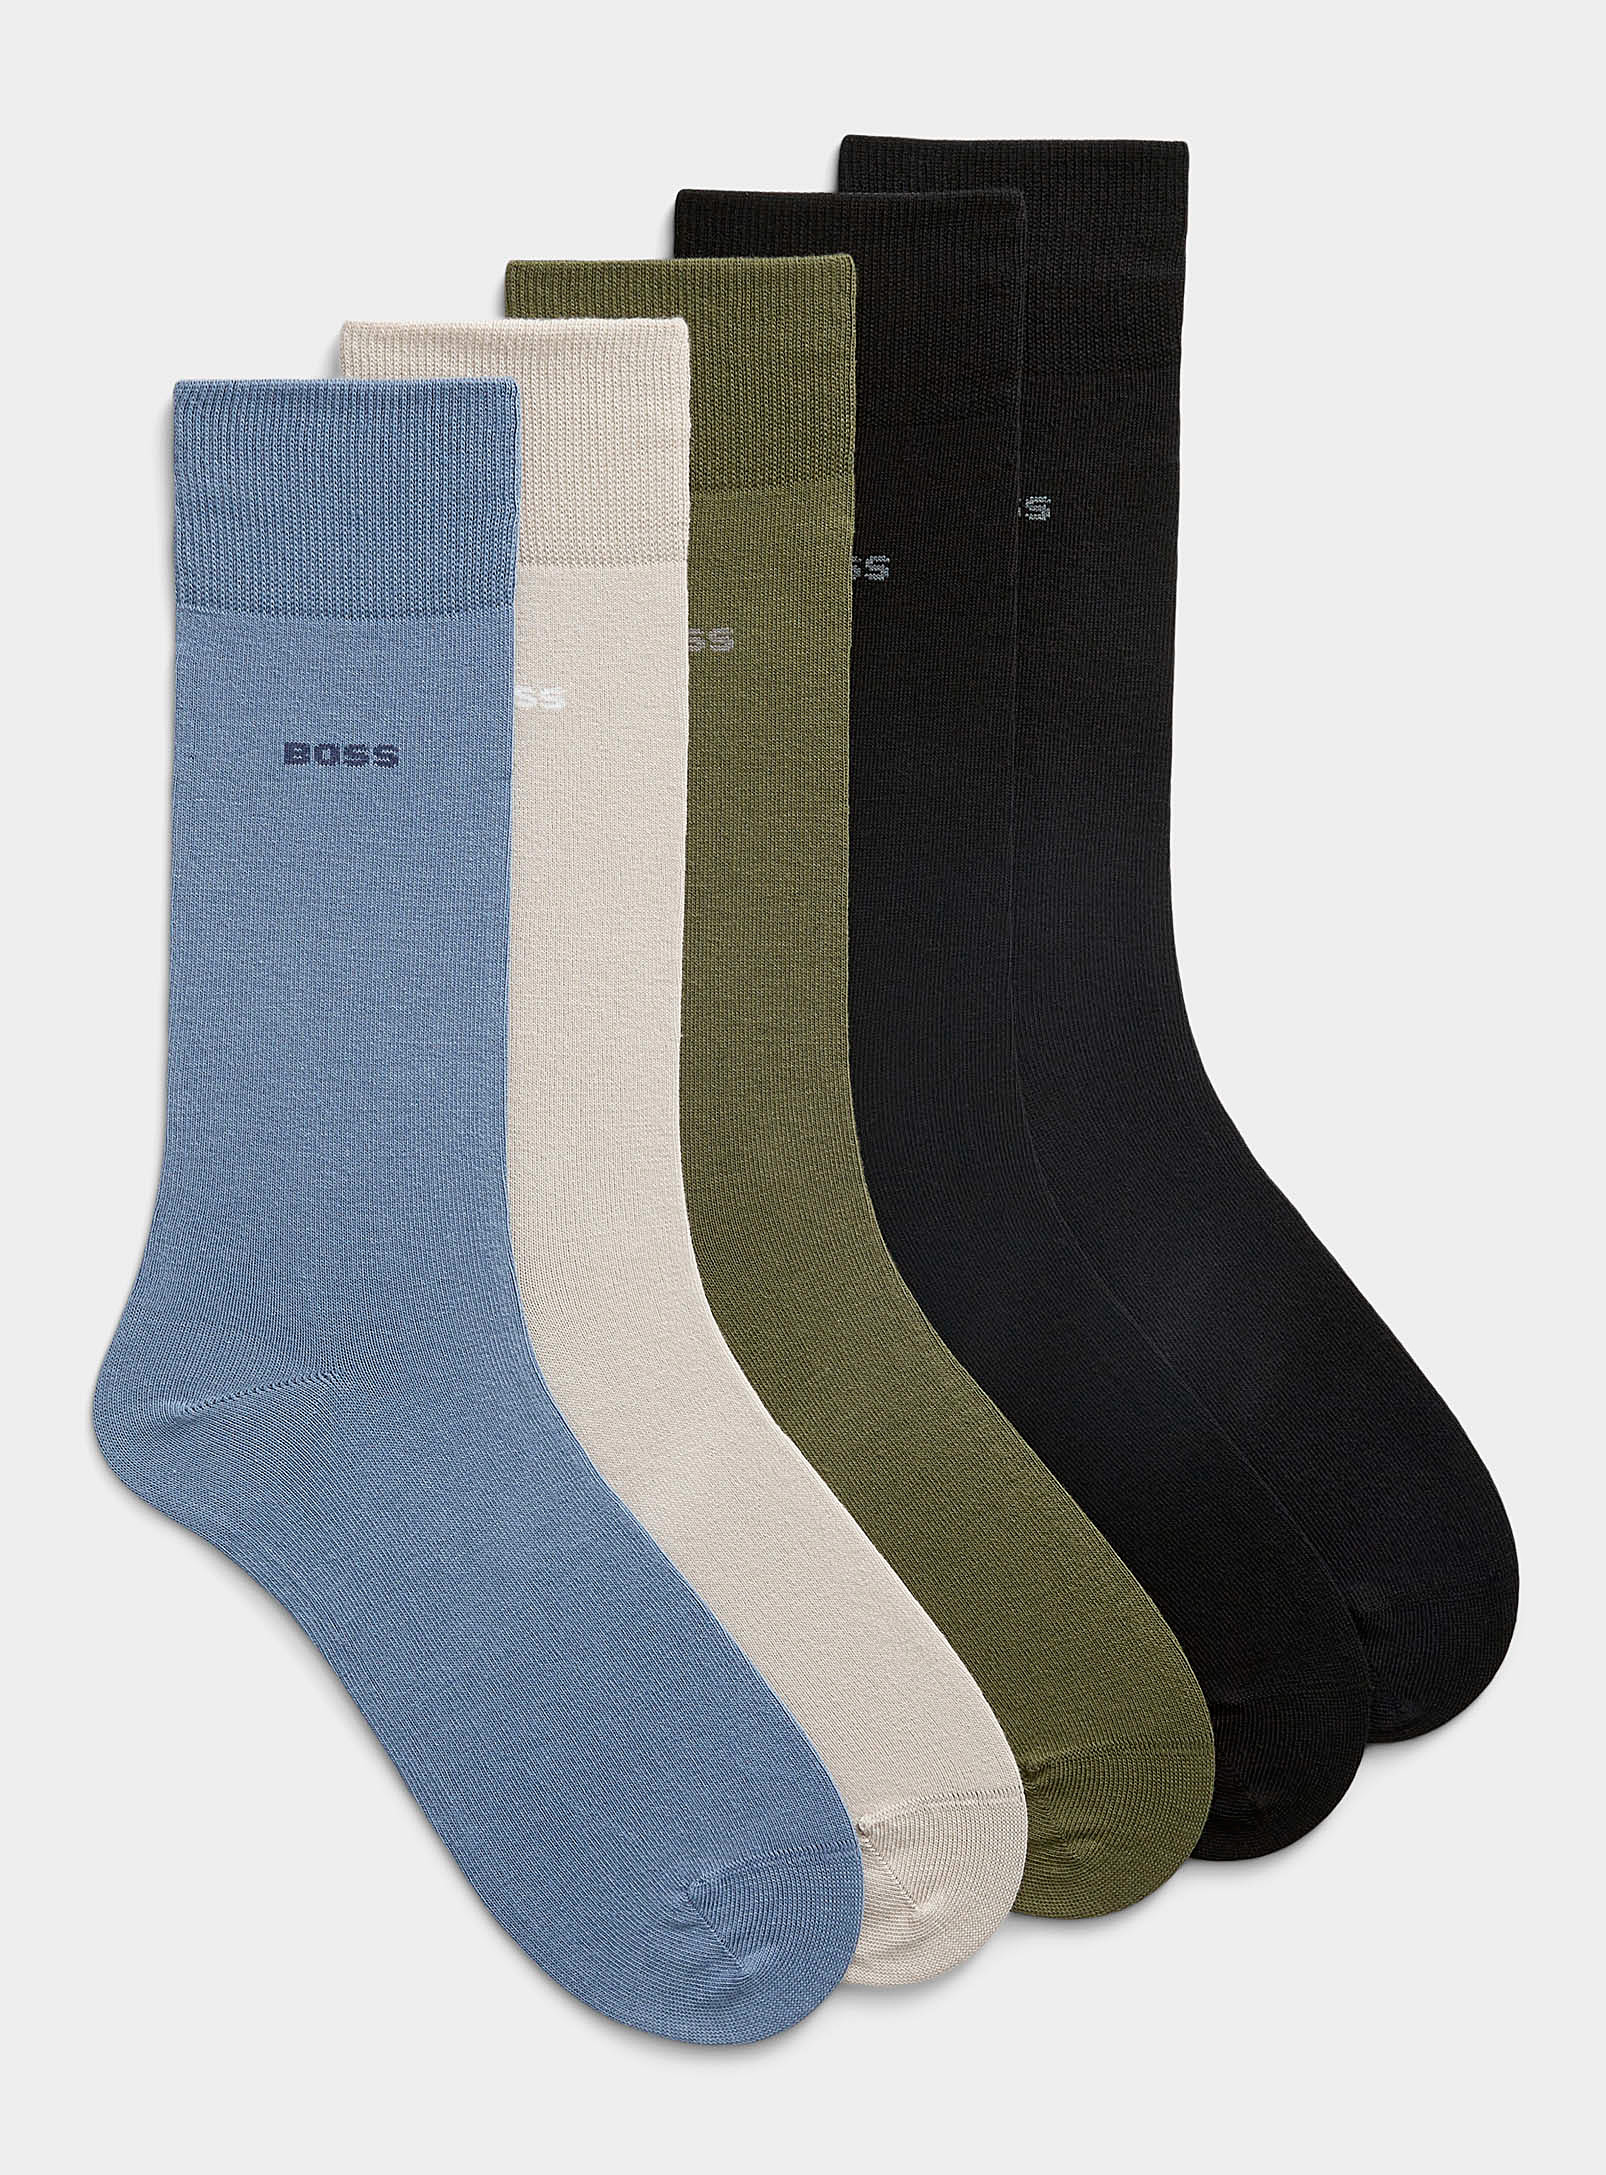 Hugo Boss Neutral Dress Socks Set Of 5 In Multi